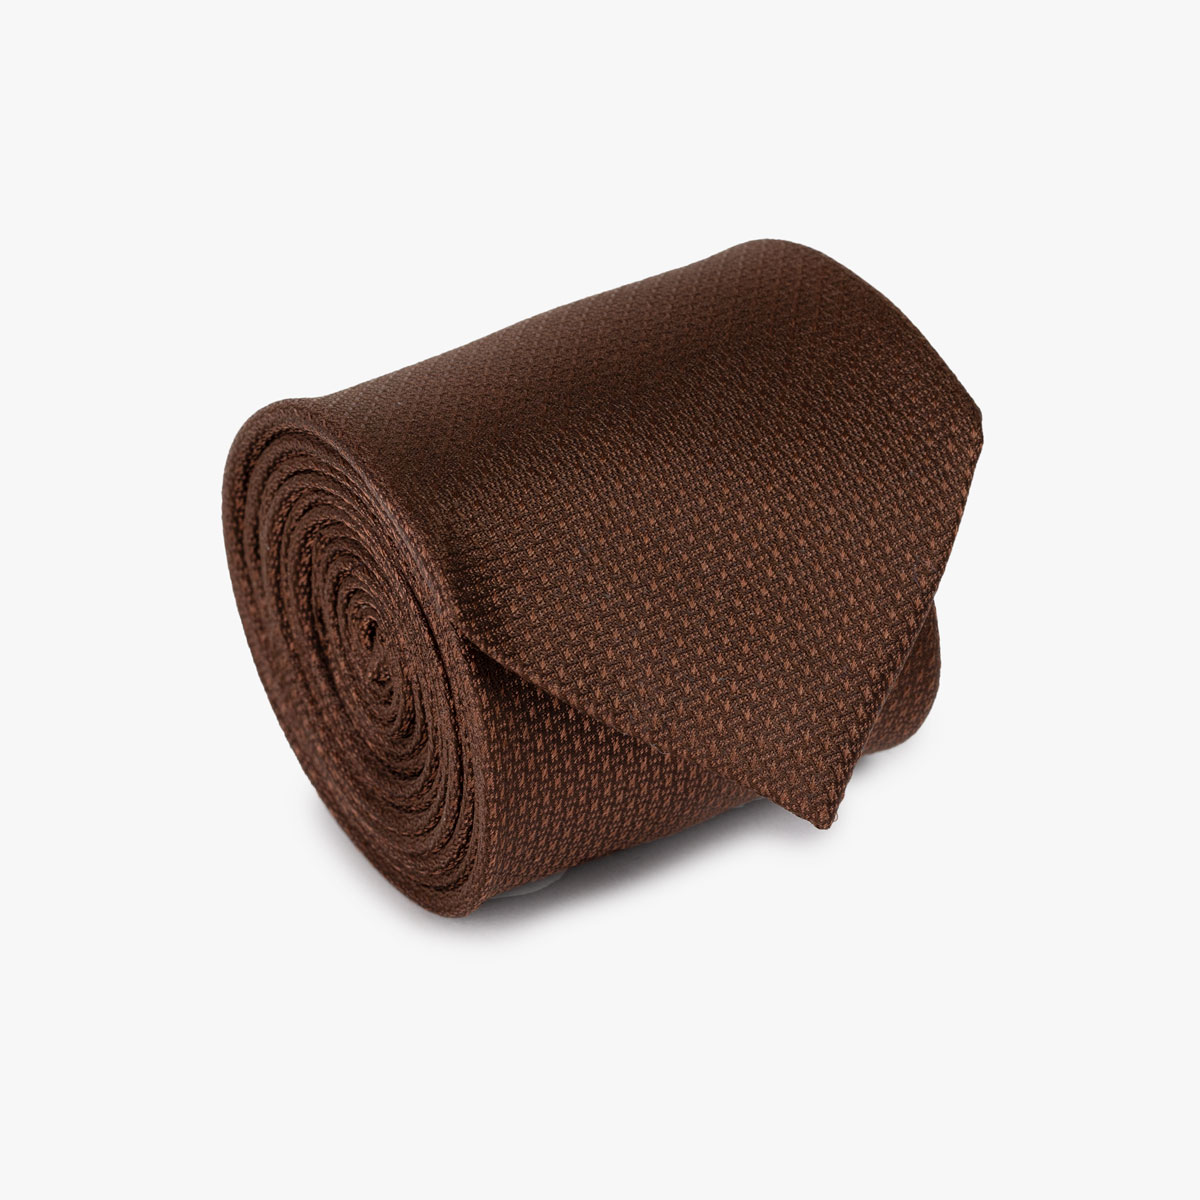 Krawatte mit geometrischem Muster in braun